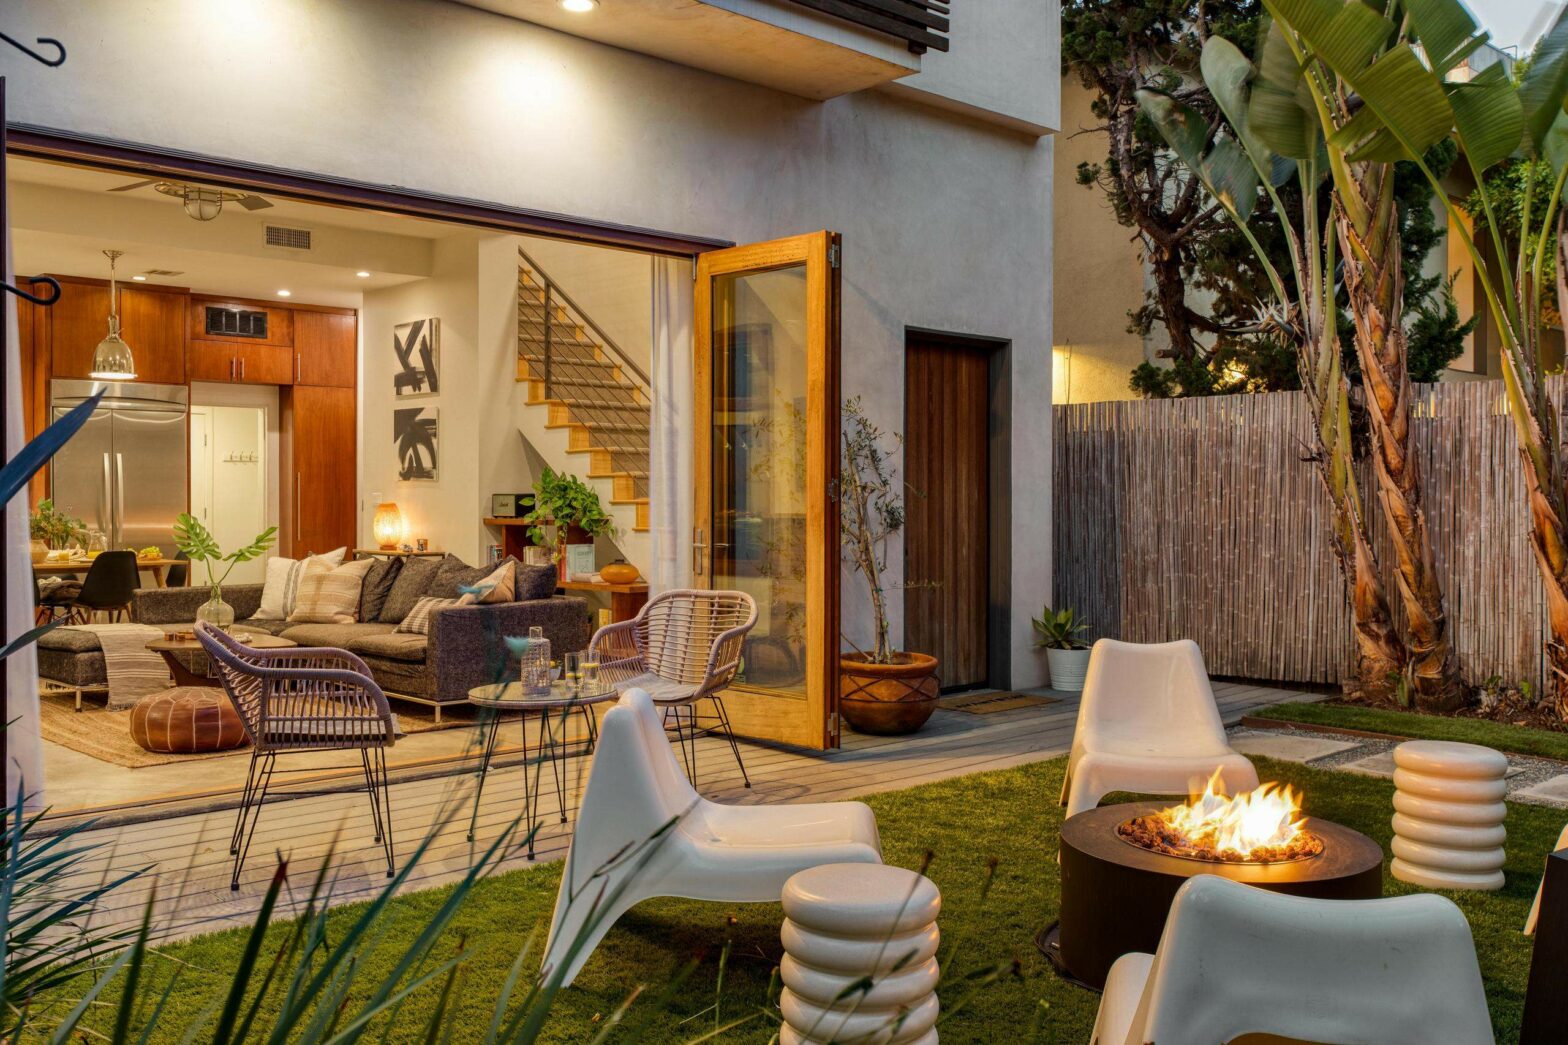 AvantStay vacation rental home in Los Angeles